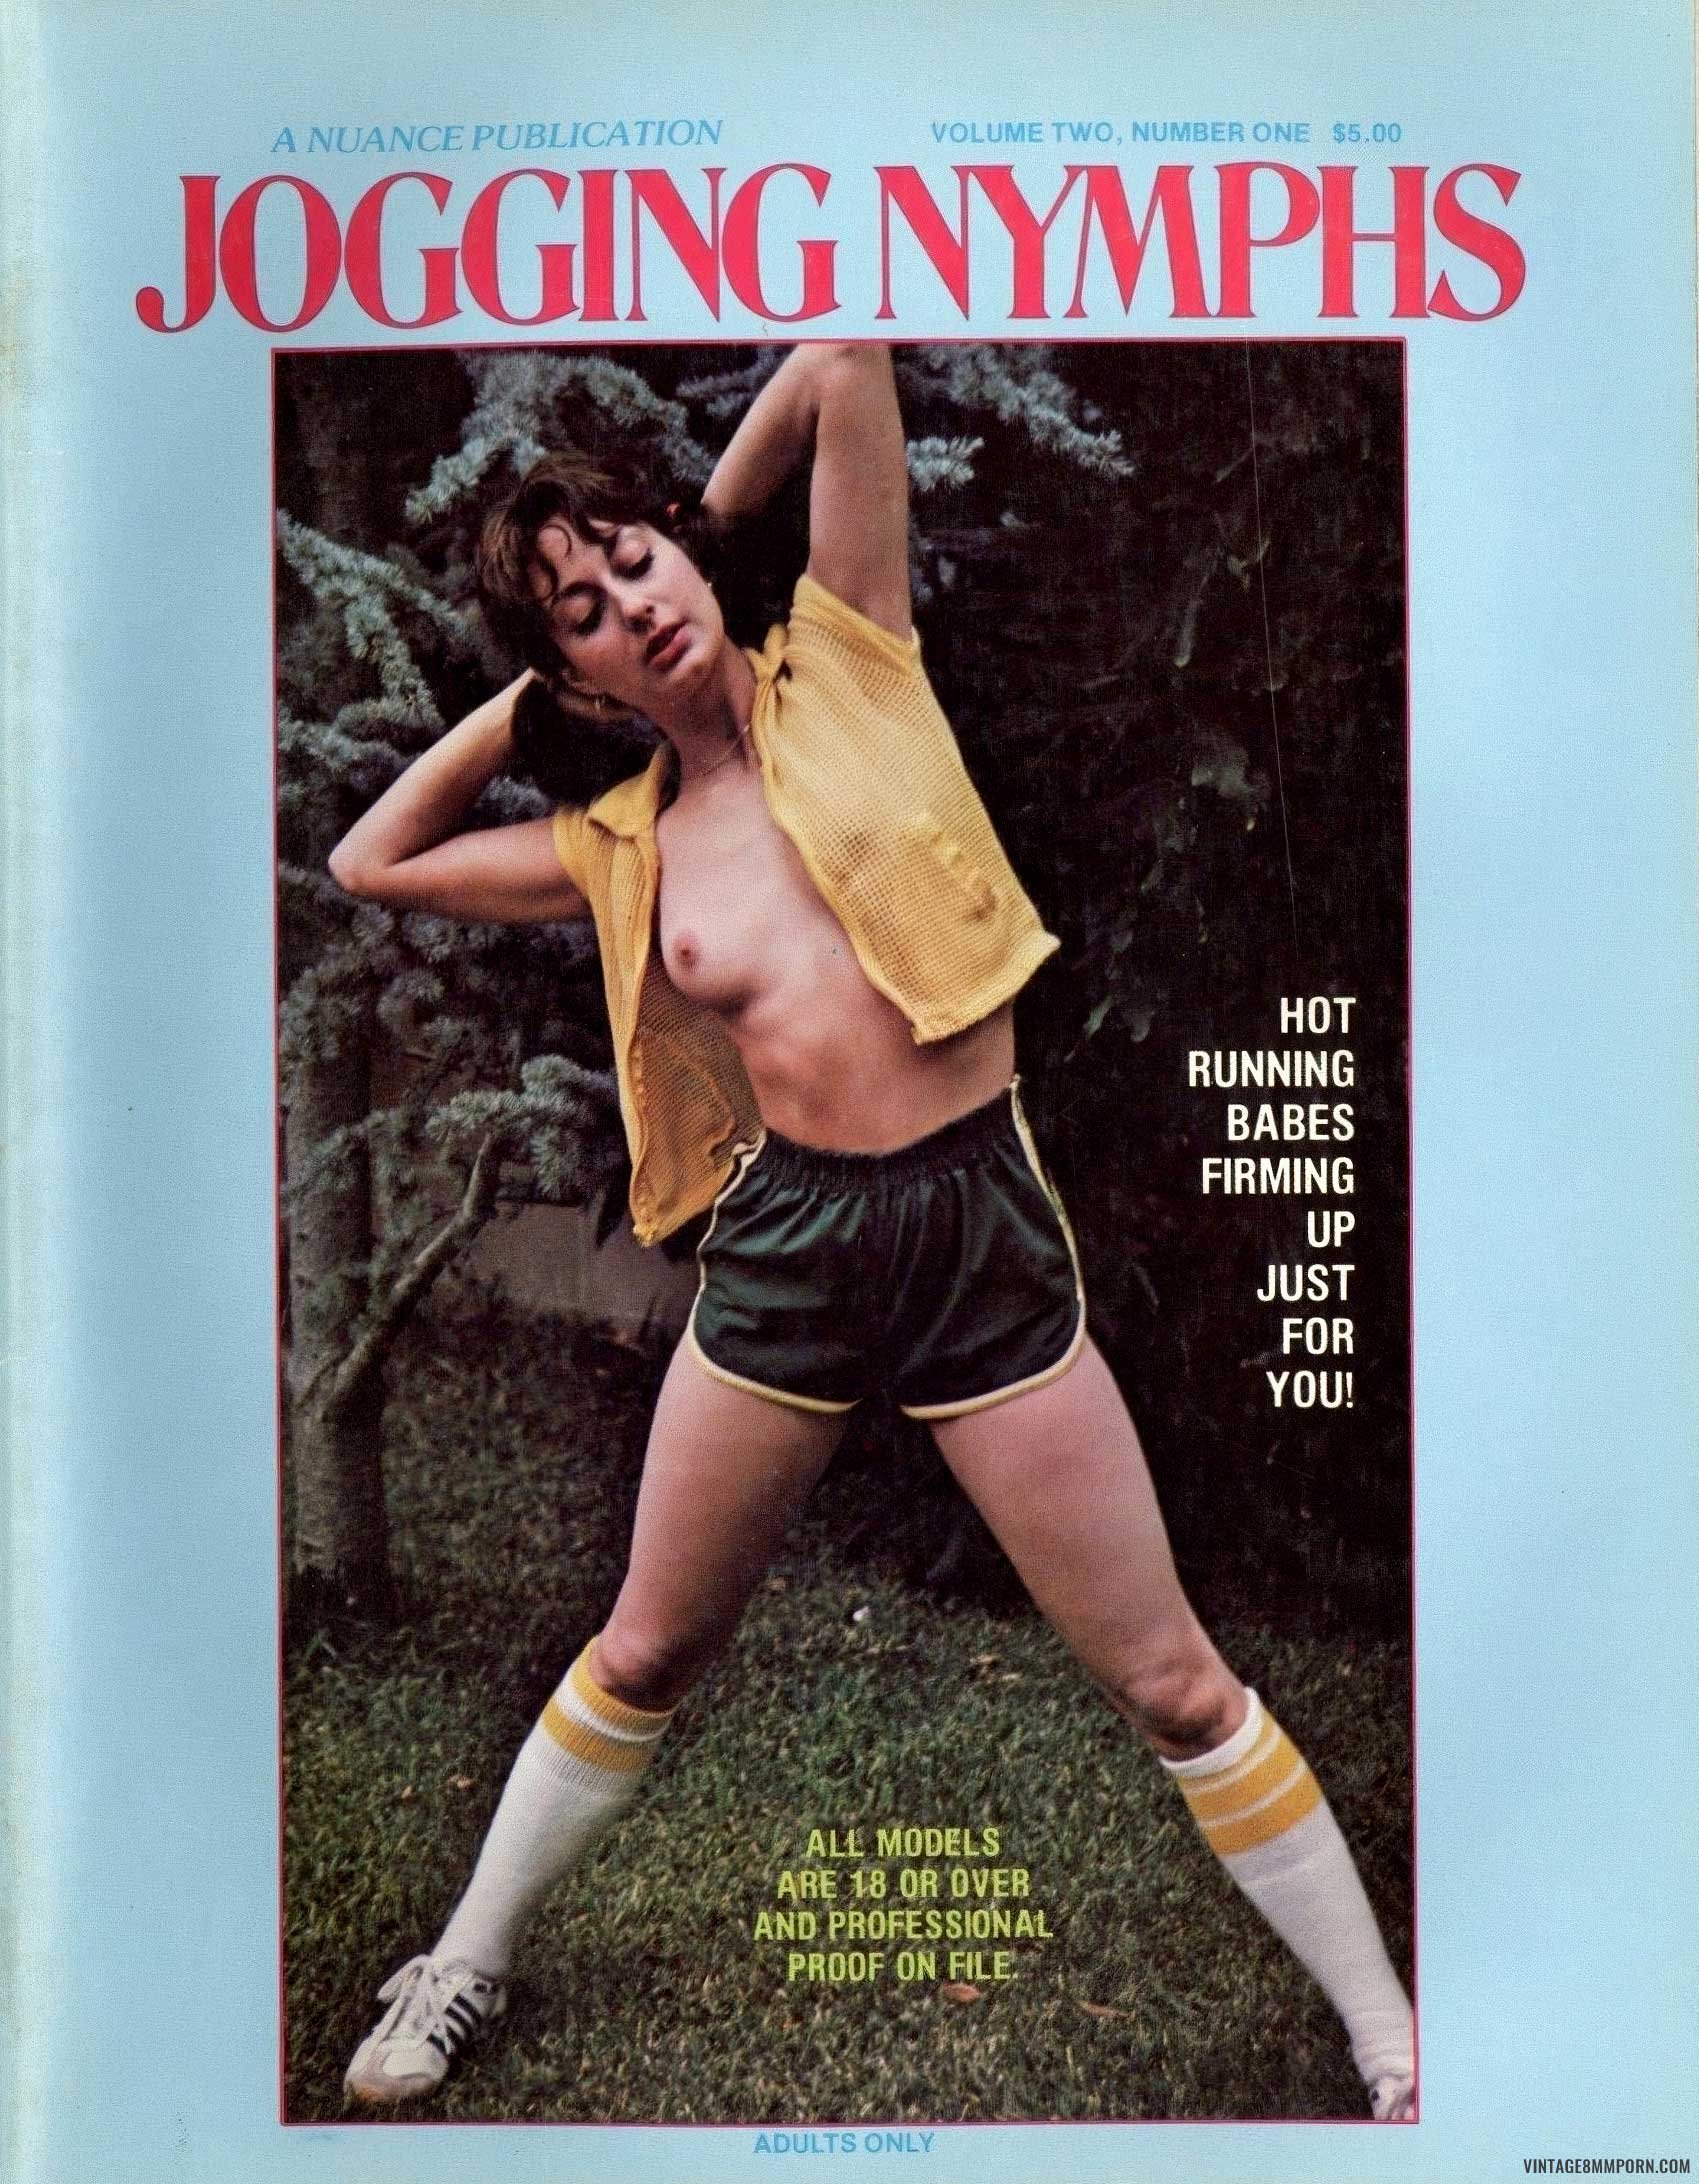 Jogging Nymphs Volume 2 Number 1 (1979)